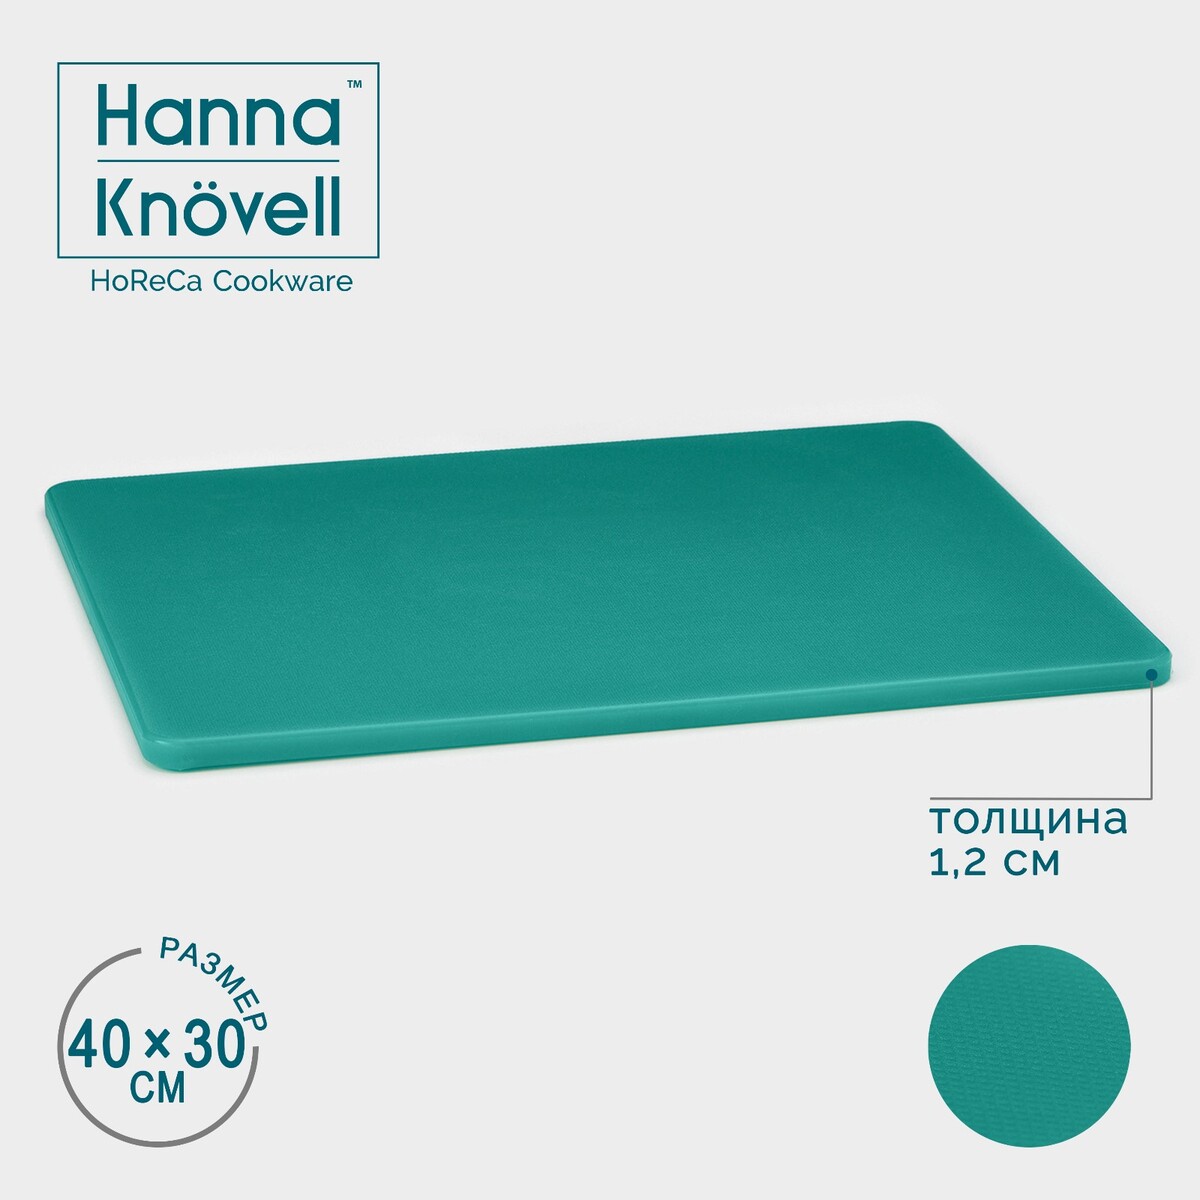 Доска профессиональная разделочная hanna knövell, 40×30×1,2 см, цвет зеленый доска профессиональная разделочная 40×30 см толщина 1 2 см зеленый